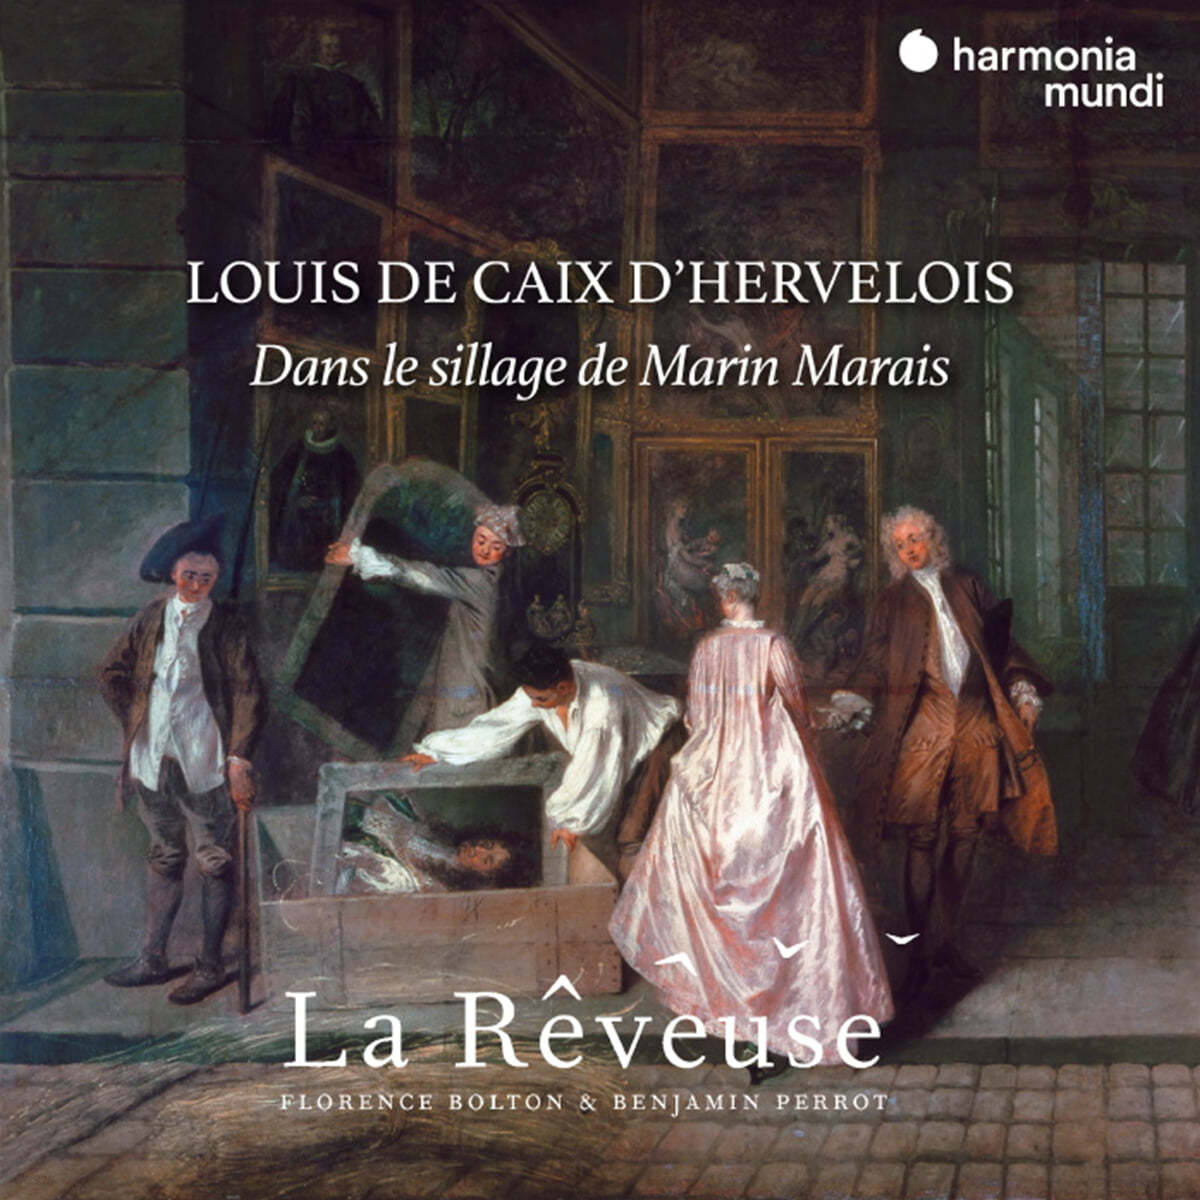 La Reveuse 루이 드 캐 데르벨루아: 마랭 마레의 발자취를 따라 (Louis de Caix de Hervelois: Dans le sillage de Marin Marais) 